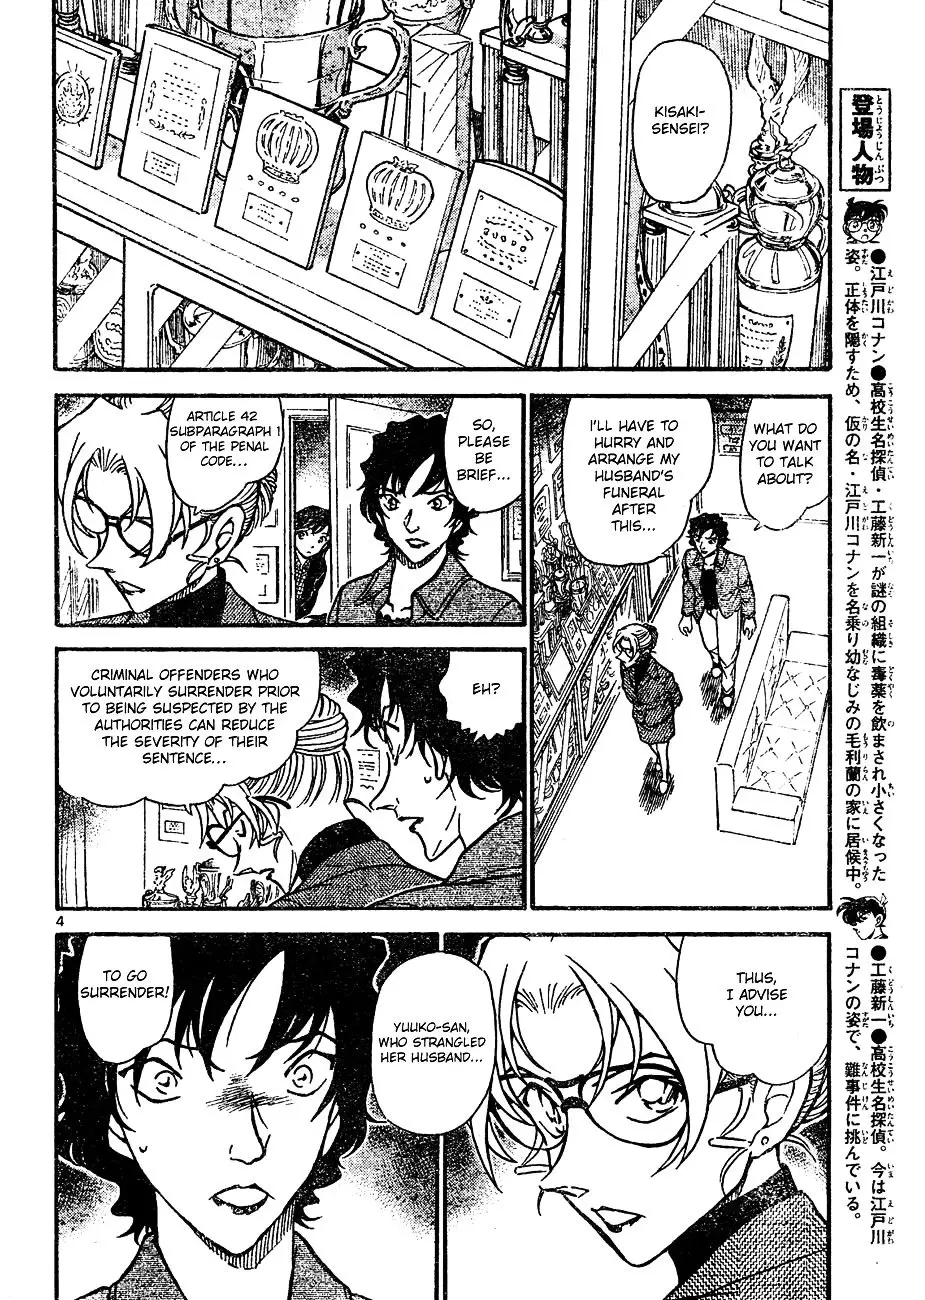 Detective Conan - 645 page 4